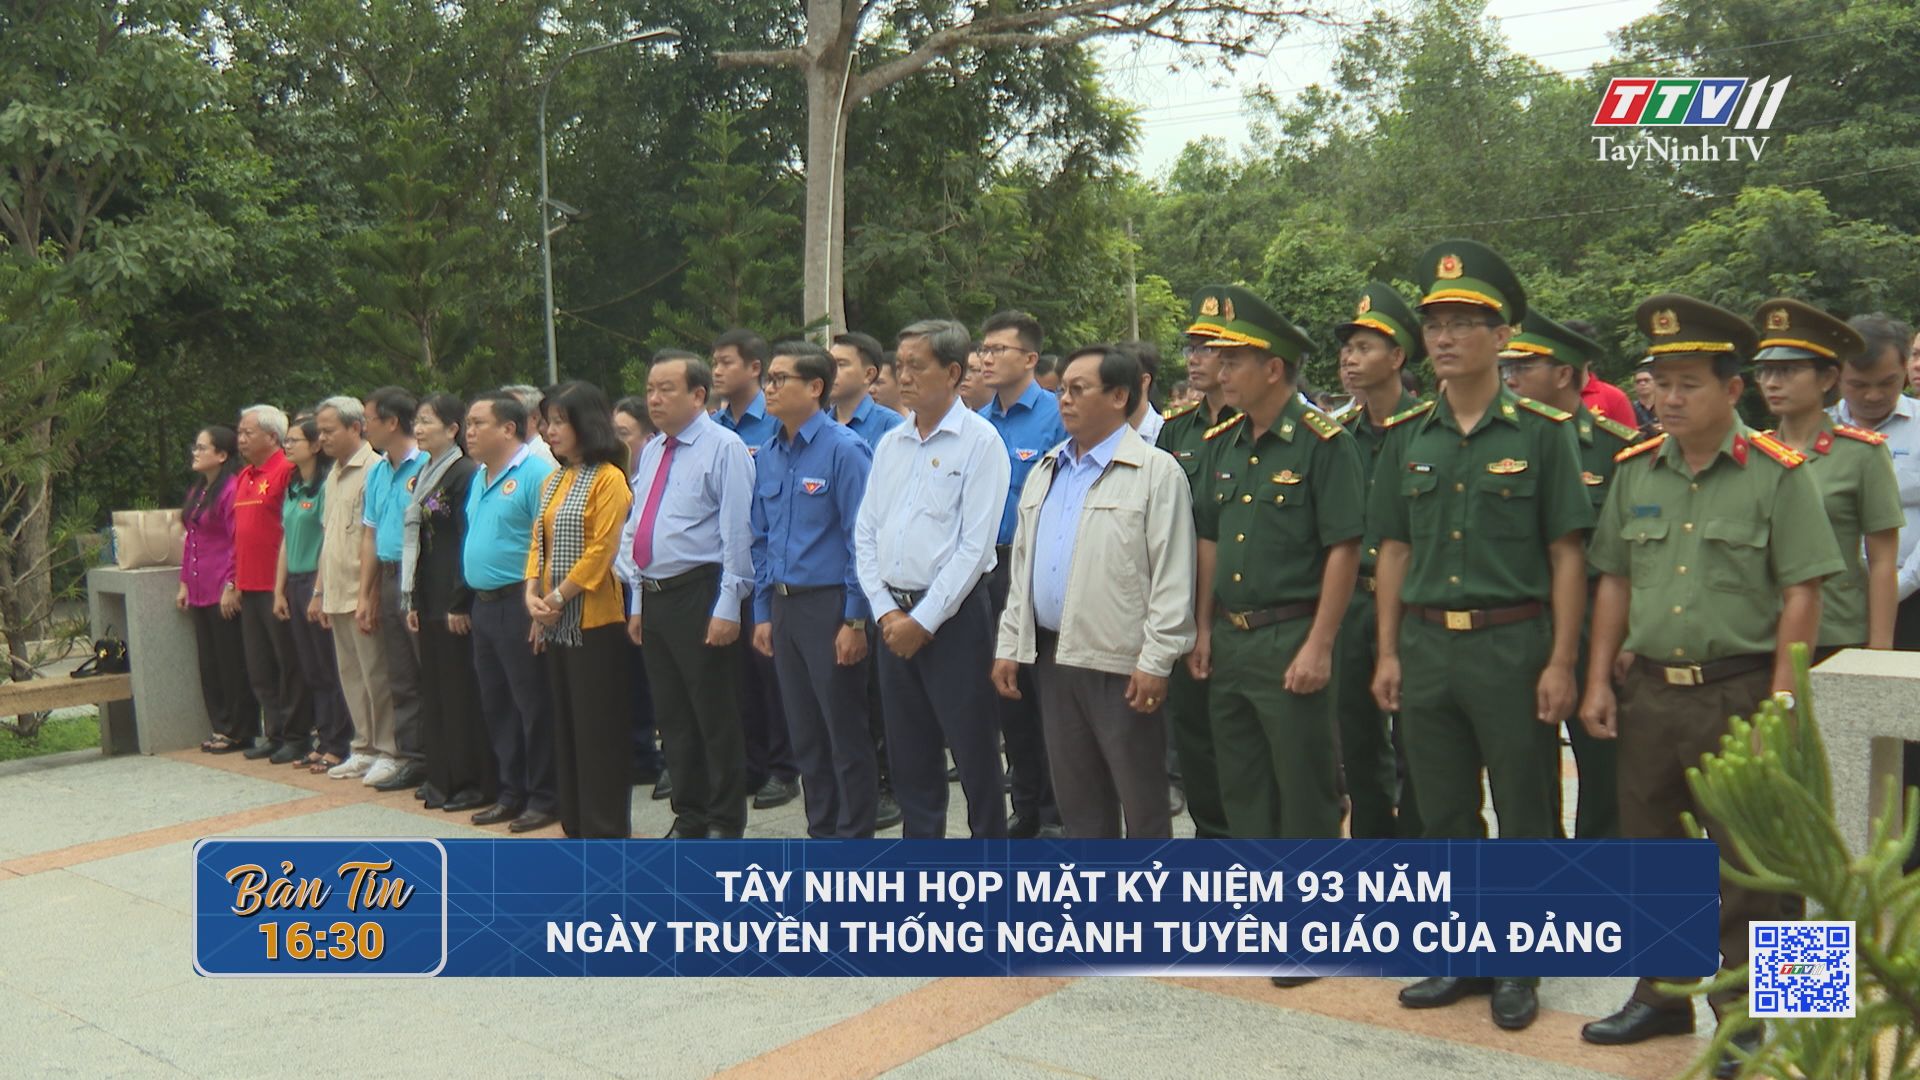 Tây Ninh họp mặt kỷ niệm 93 năm Ngày truyền thống ngành Tuyên giáo của Đảng | TayNinhTV